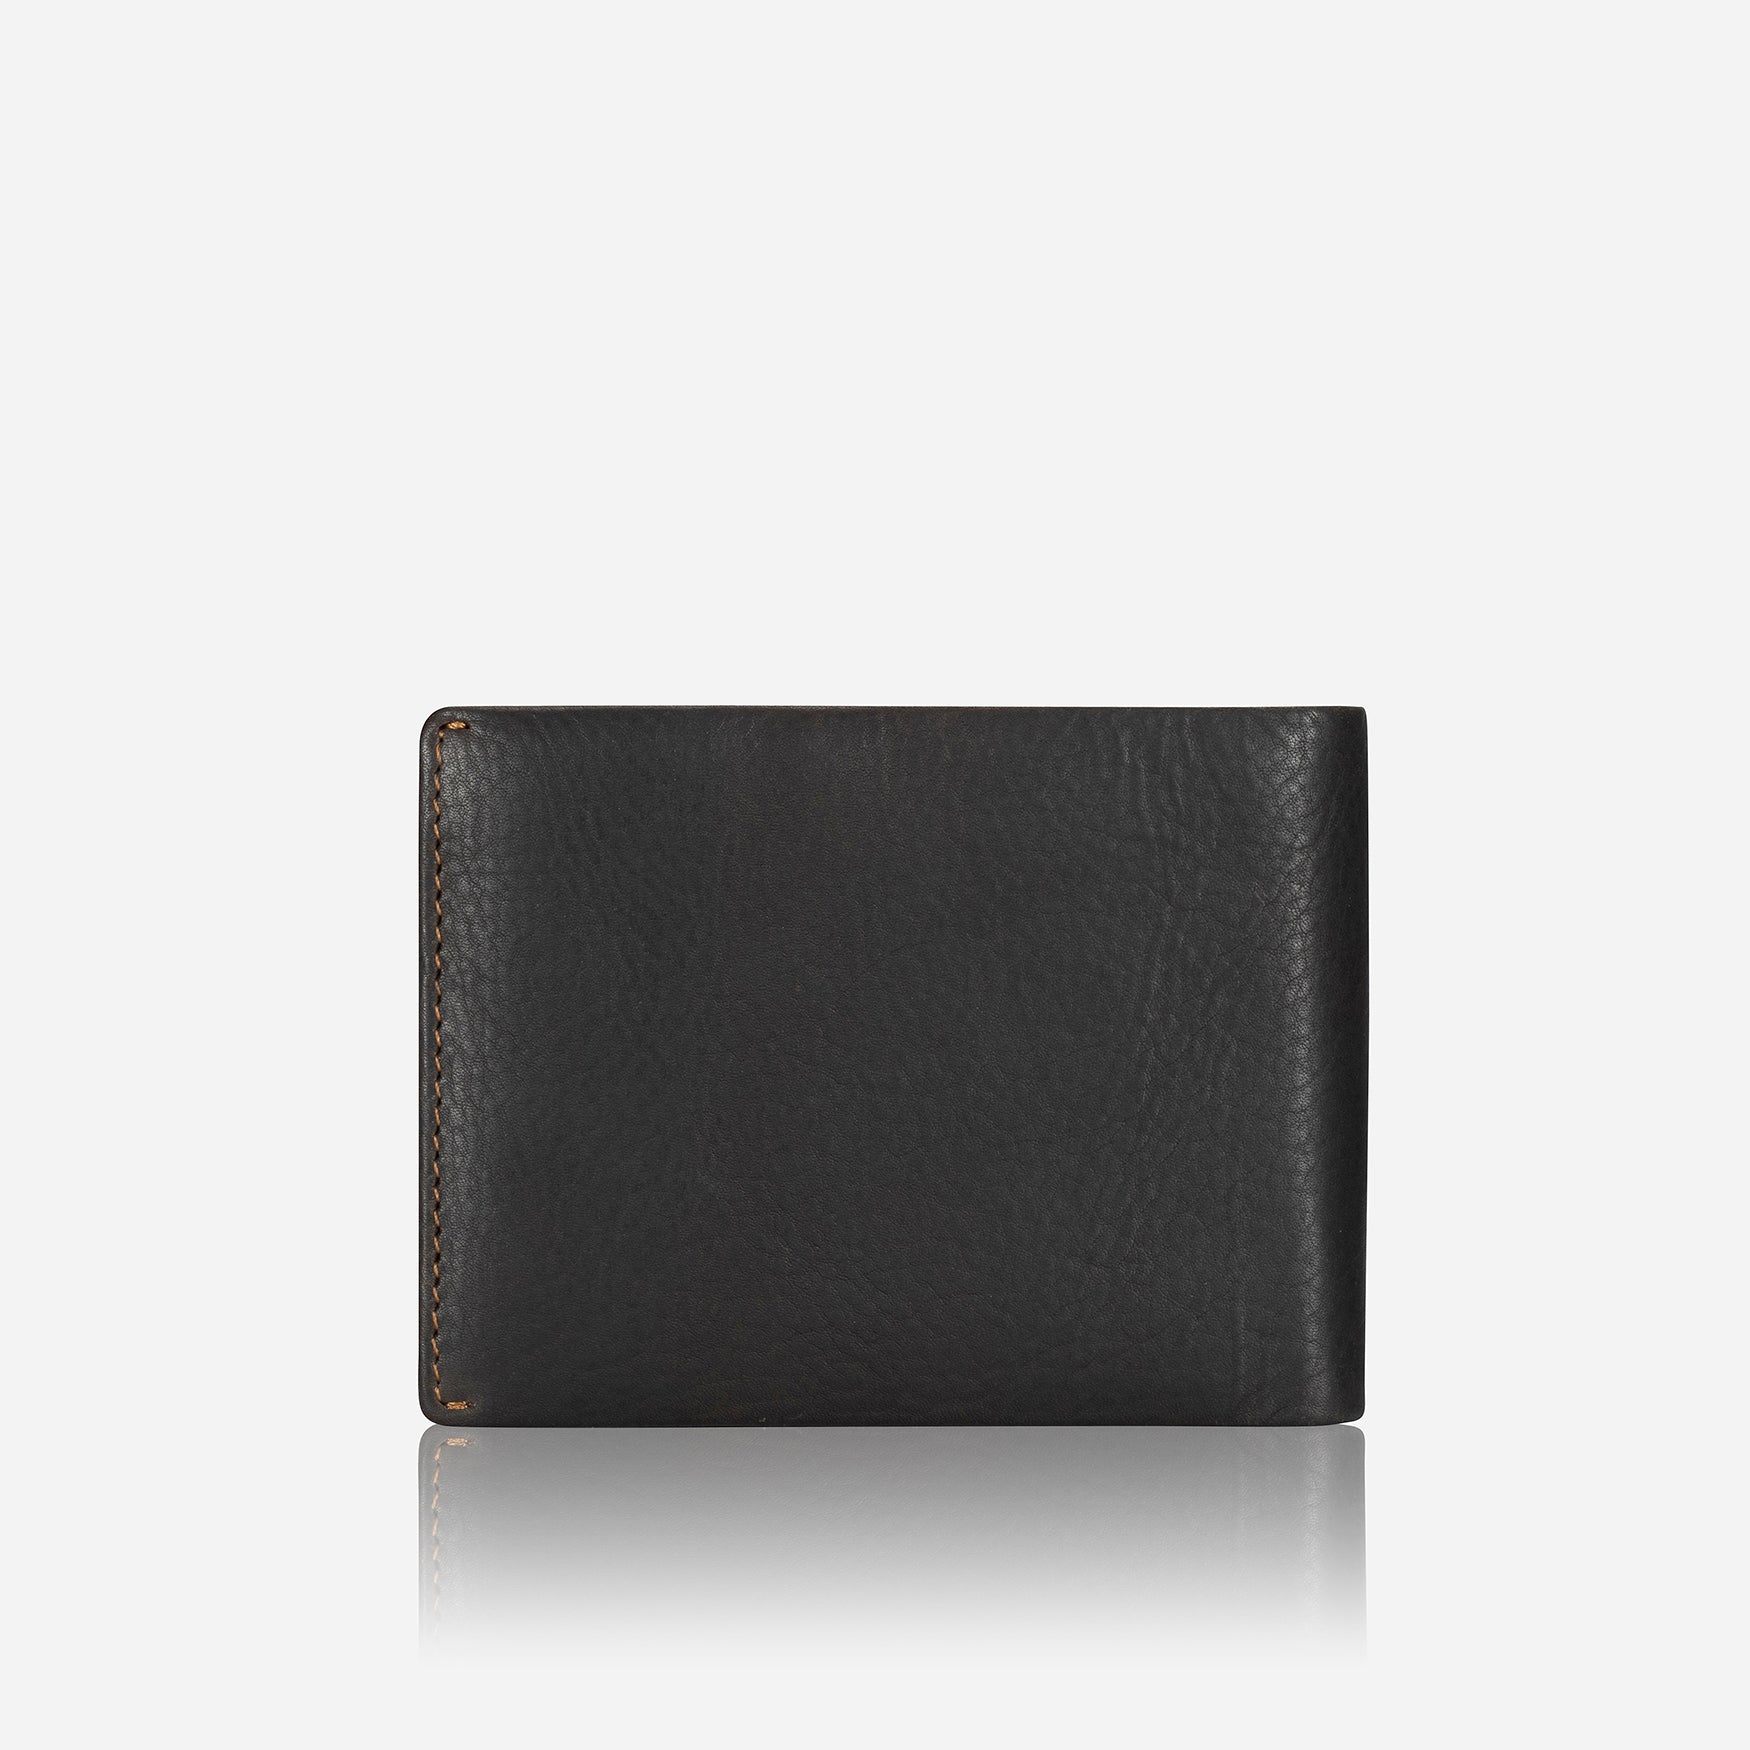 Eastwood Slim Leather Card Wallet, Brown